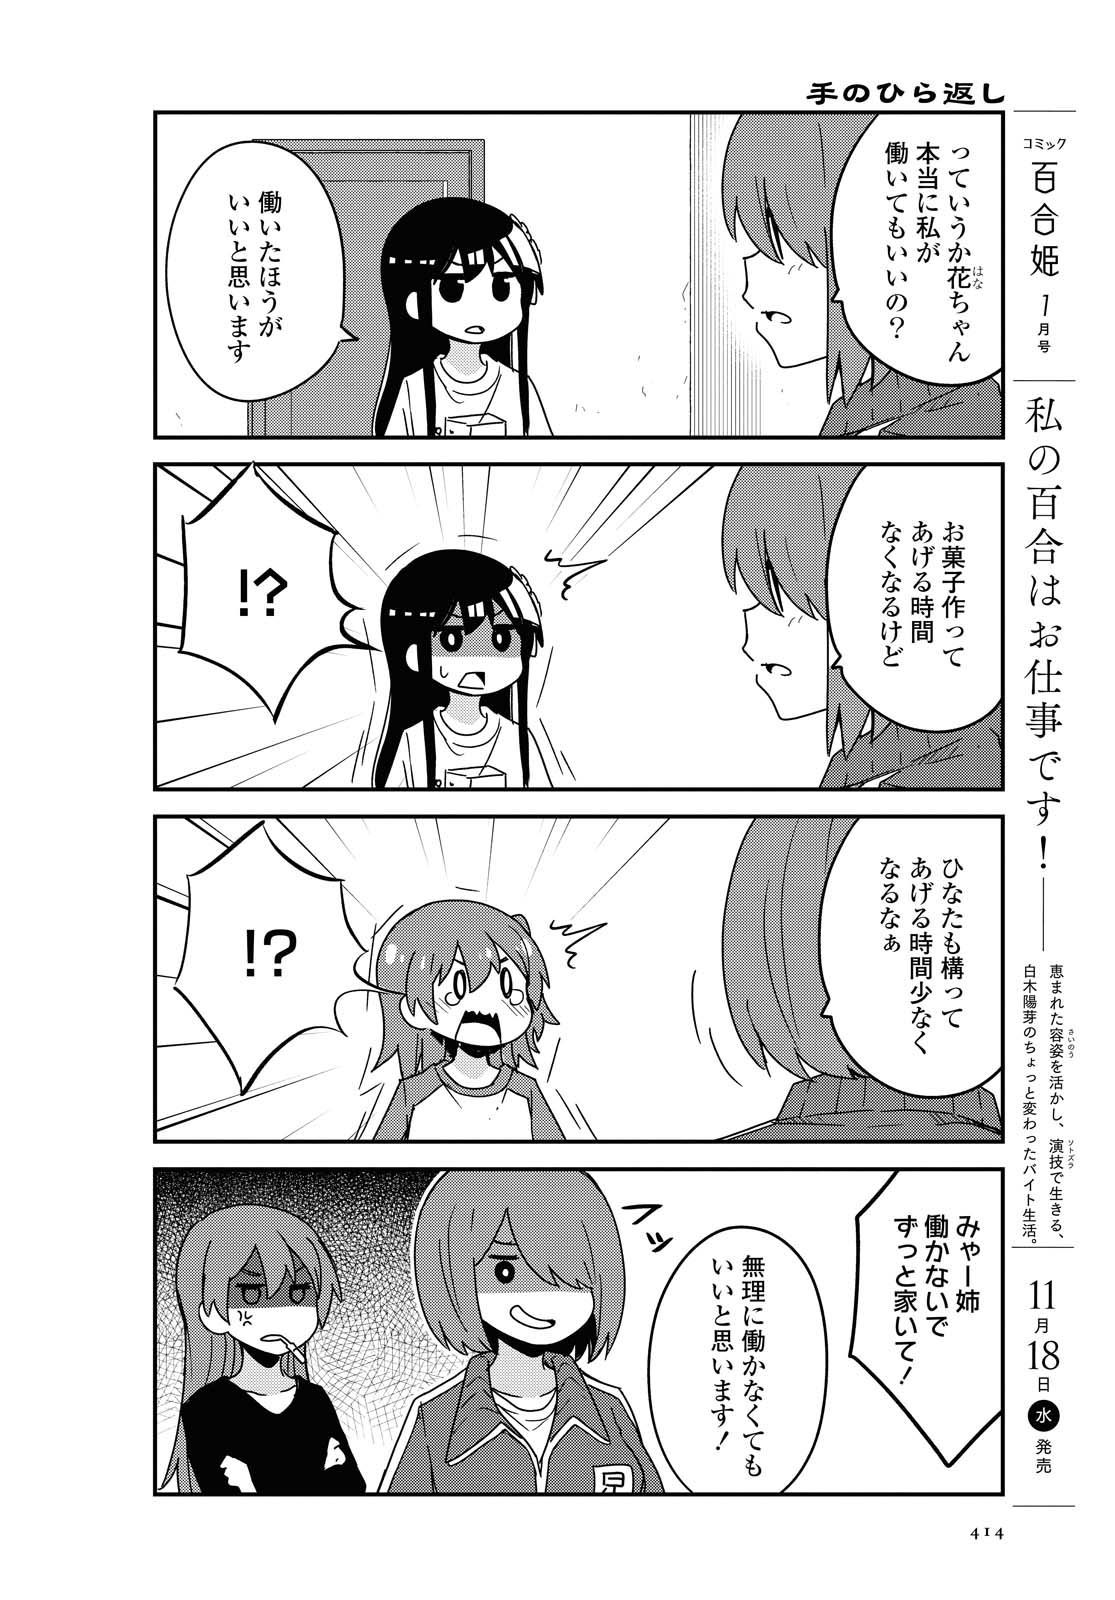 Watashi ni Tenshi ga Maiorita! - Chapter 73 - Page 6